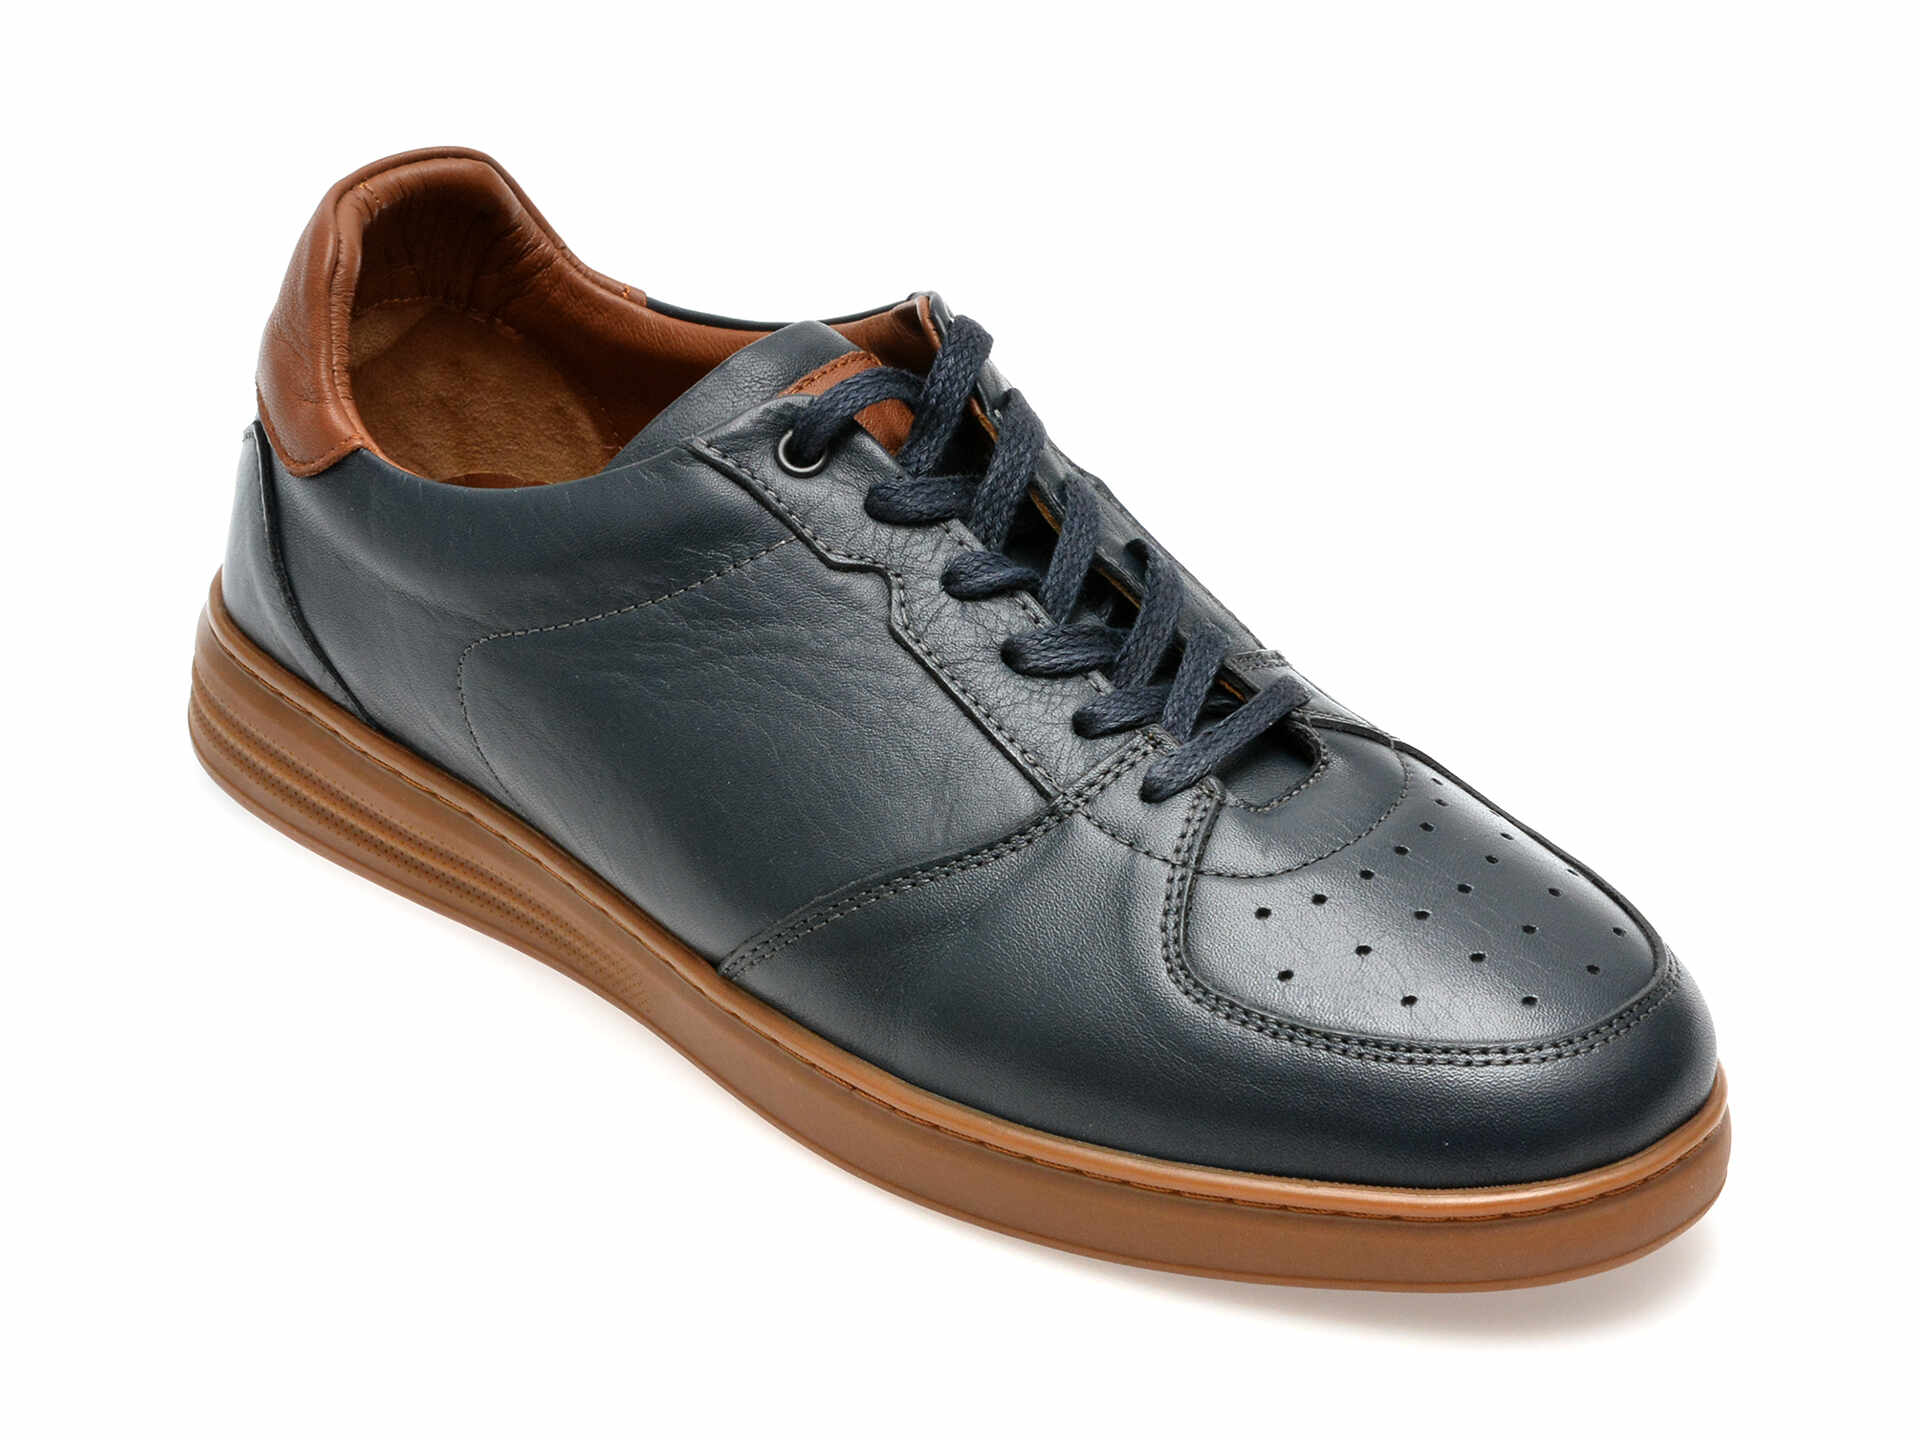 Pantofi casual GRYXX bleumarin, 33948, din piele naturala